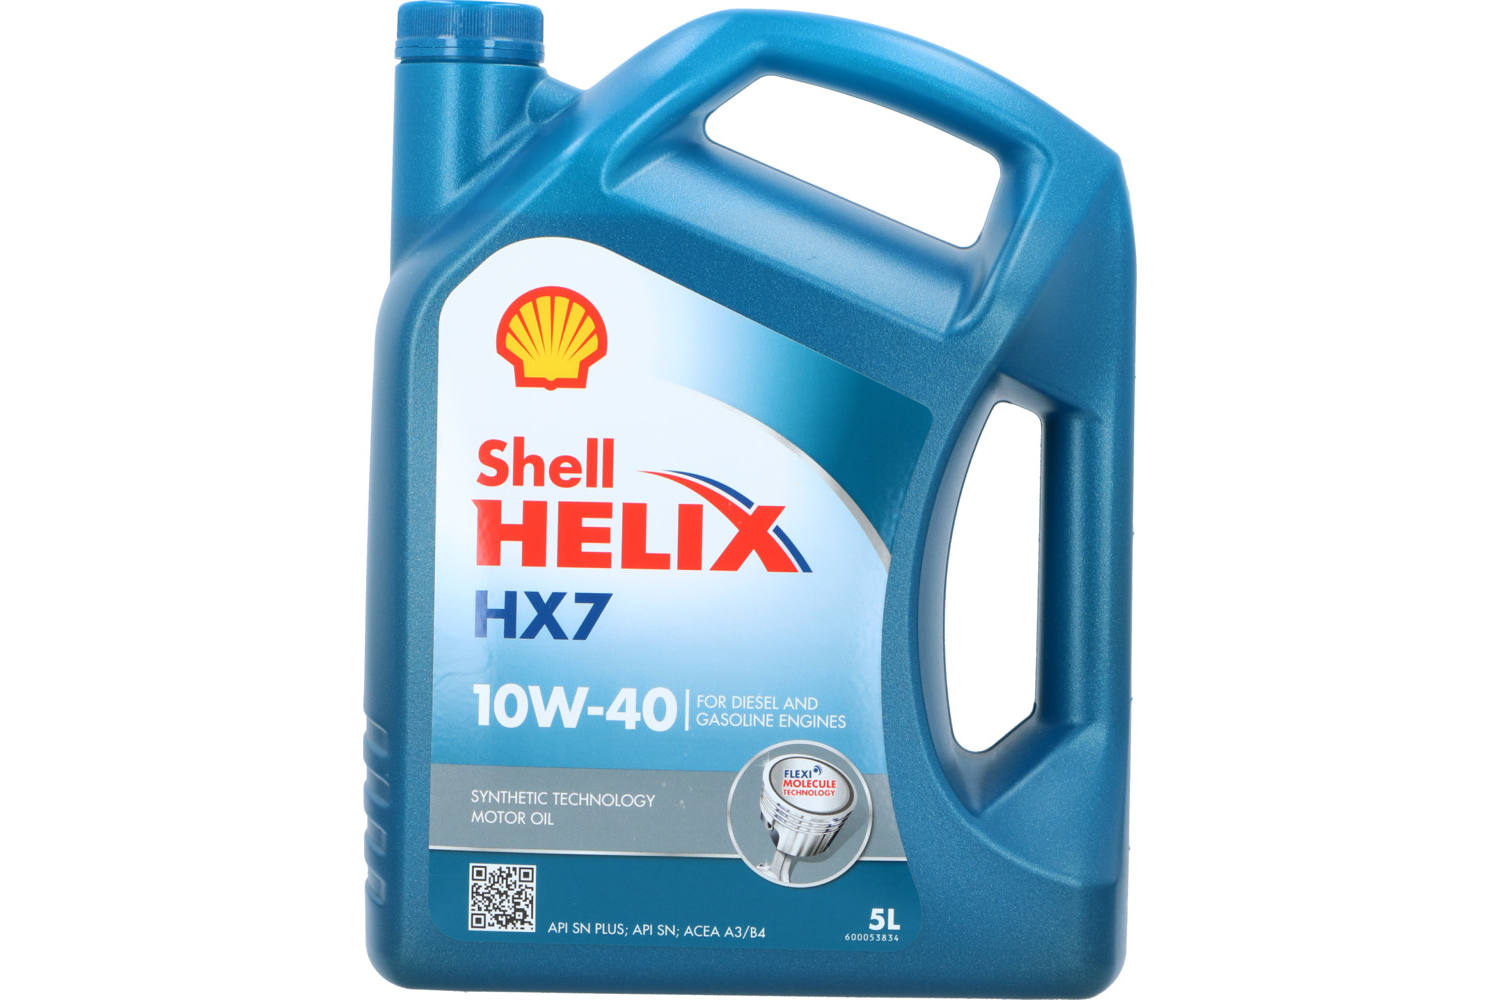 Motor oil, Shell Helix, 10W40, HX7, 5l 2